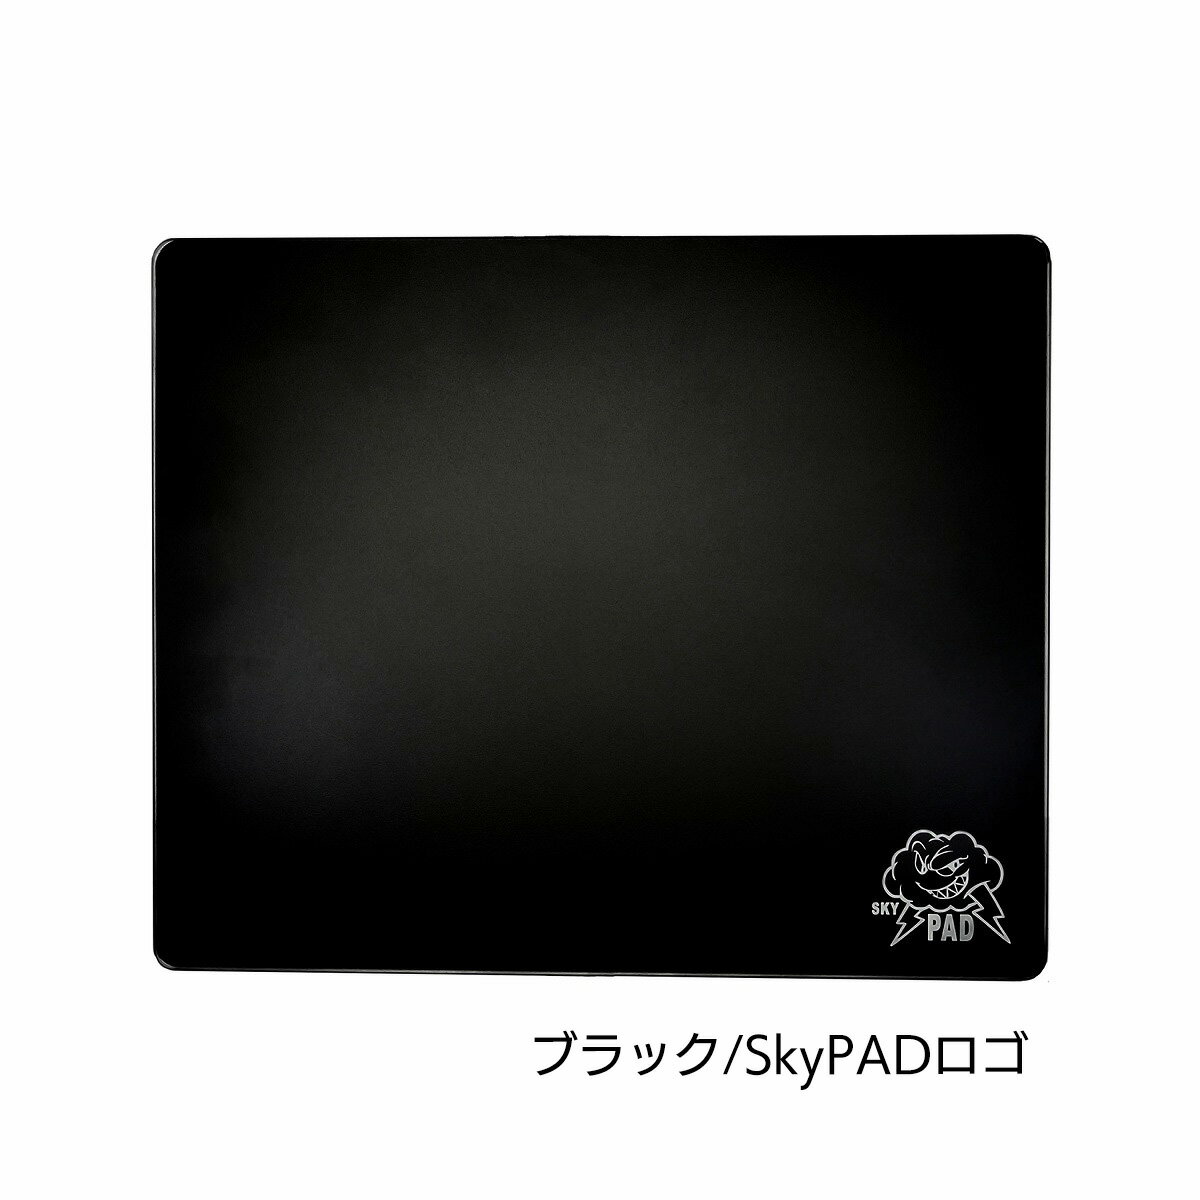 SkyPAD シリーズ最高の滑らかさを誇るフルガラスマウスパッド SkyPAD 3.0XL Black Cloud XLサイズ ブラック(SkyPADロゴ)